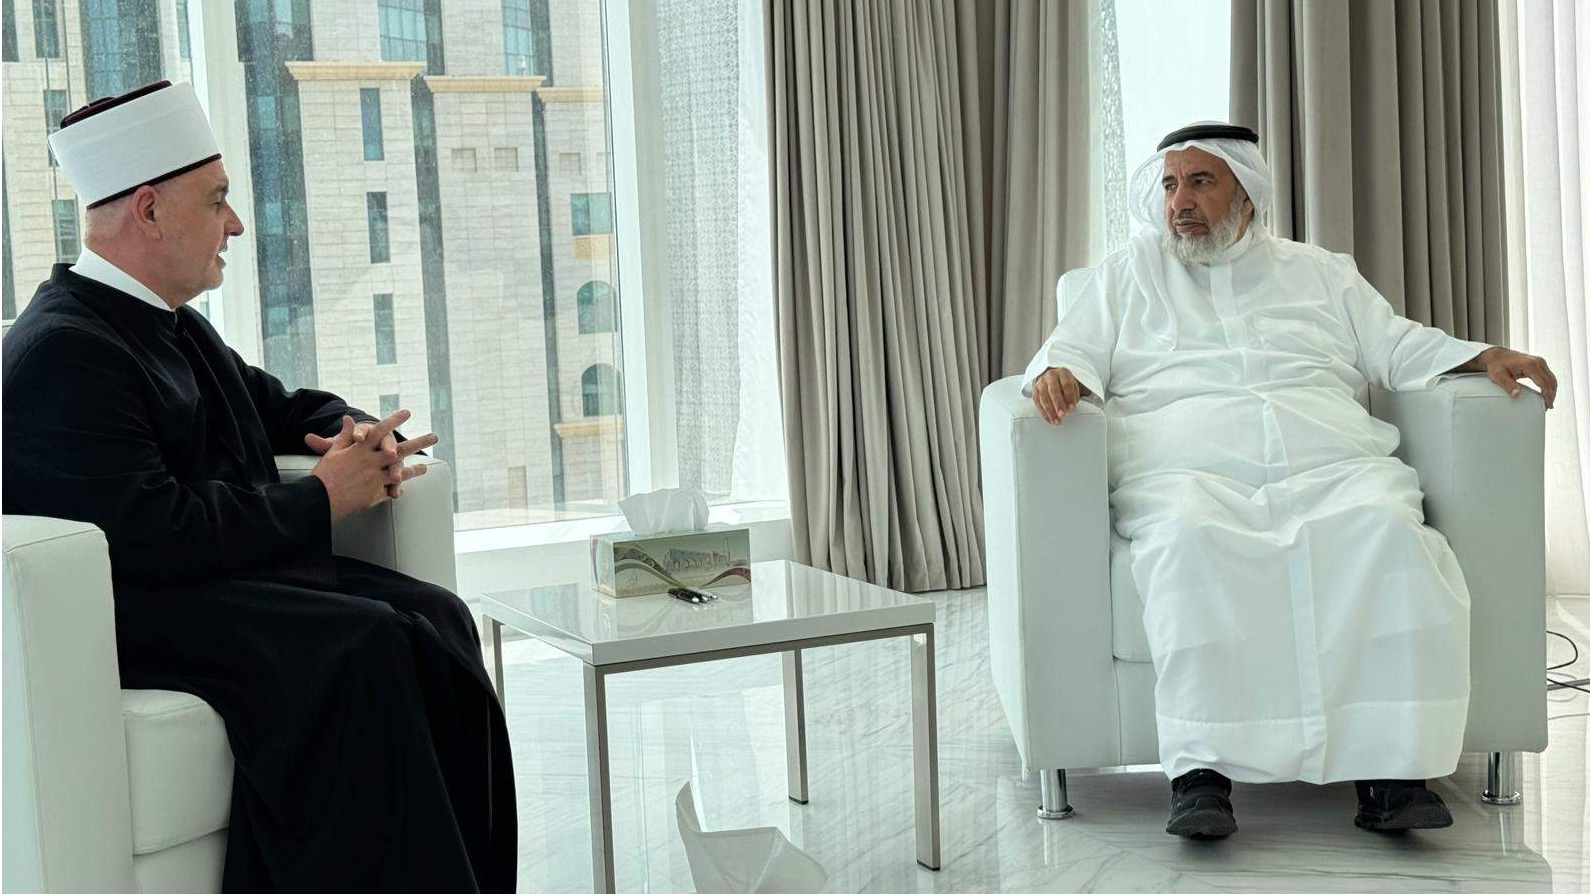 Doha: Značajni sastanci reisul-uleme i delegacije IZ sa zvaničnicima Države Katar